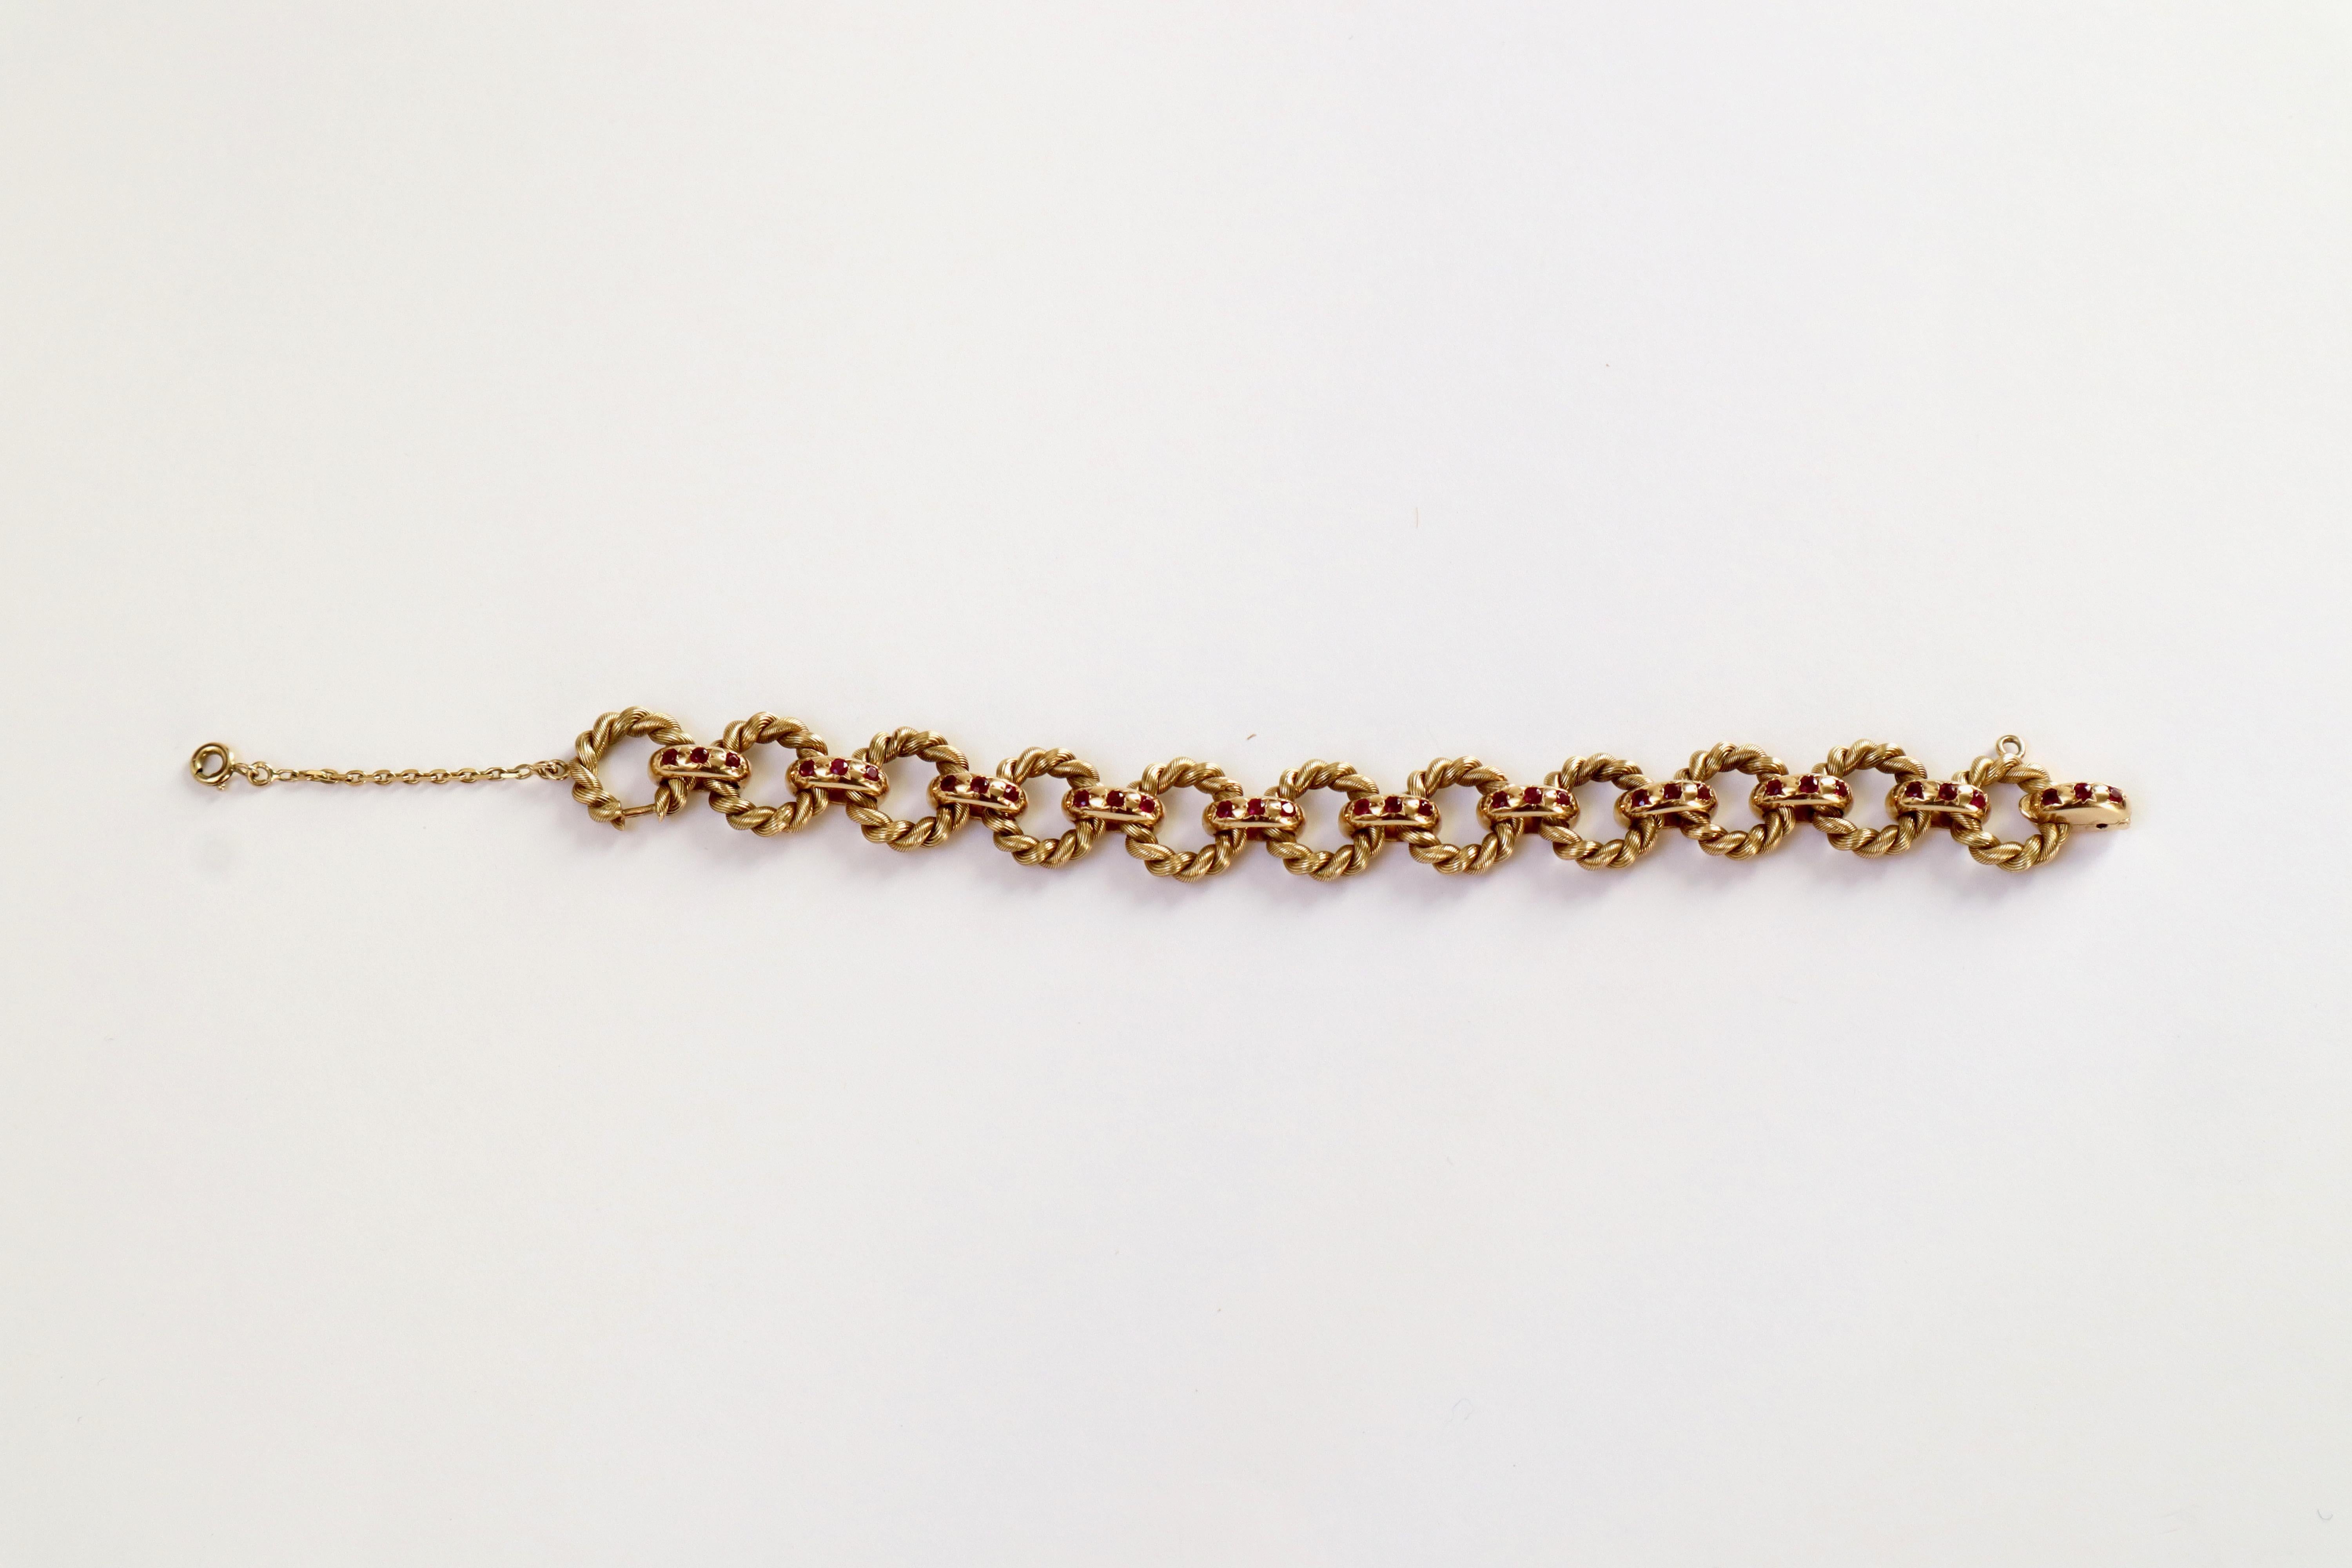 Van Cleef & Arpels Armband aus 18 Karat Gelbgold und Rubinen mit gedrehten Ringen
Armband bestehend aus 11 gedrehten Ringen, die von 11 Gliedern gehalten werden, die jeweils mit 3 Rubinen besetzt sind
Signiert VCA und nummeriert.
Das Glied wird an